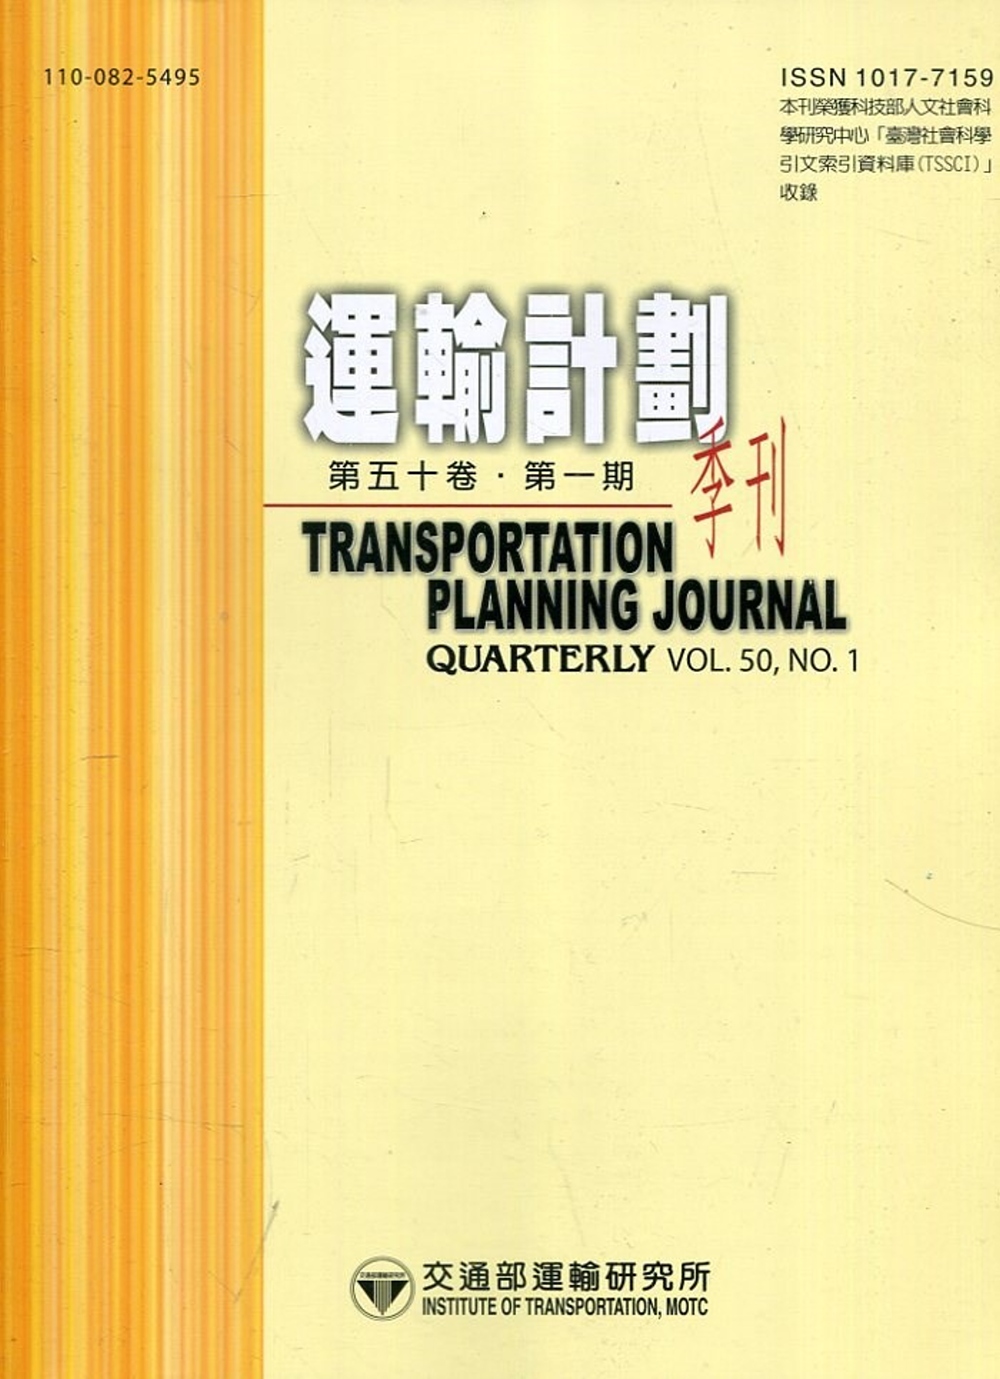 運輸計劃季刊50卷1期(110/03)：花東地區性別差異於鐵公系統轉乘模擬 之研究－以花東地區為例